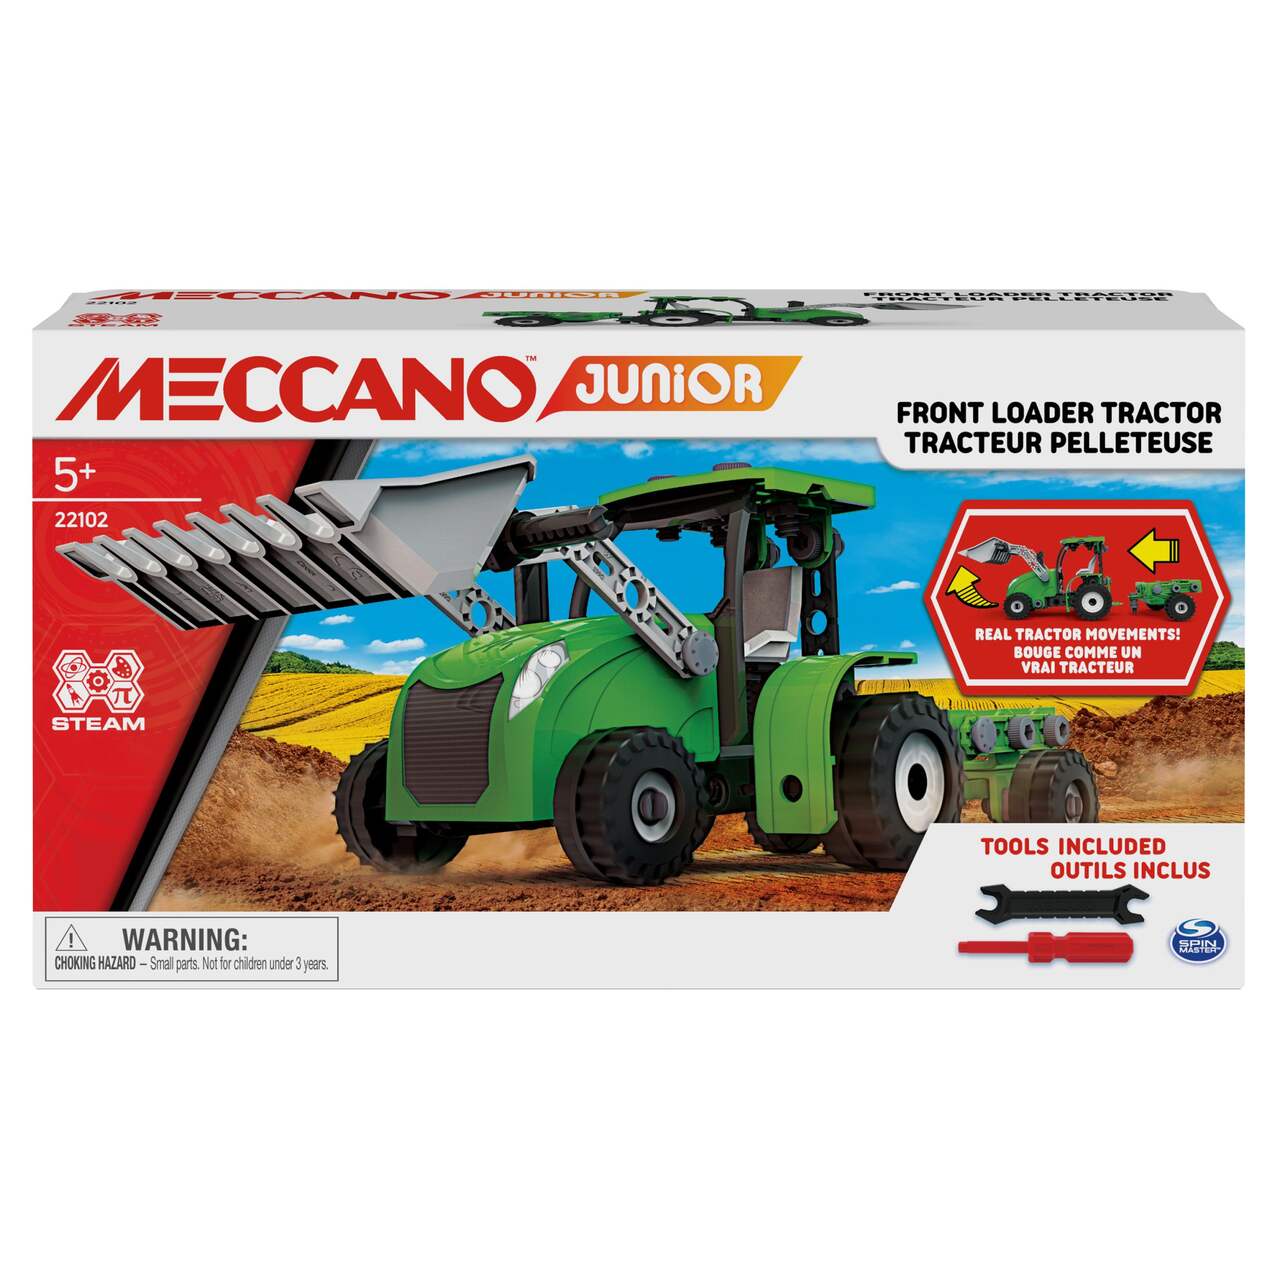 Ensemble tracteur Junior Meccano S.T.E.A.M. Jouet éducatif, 8 ans